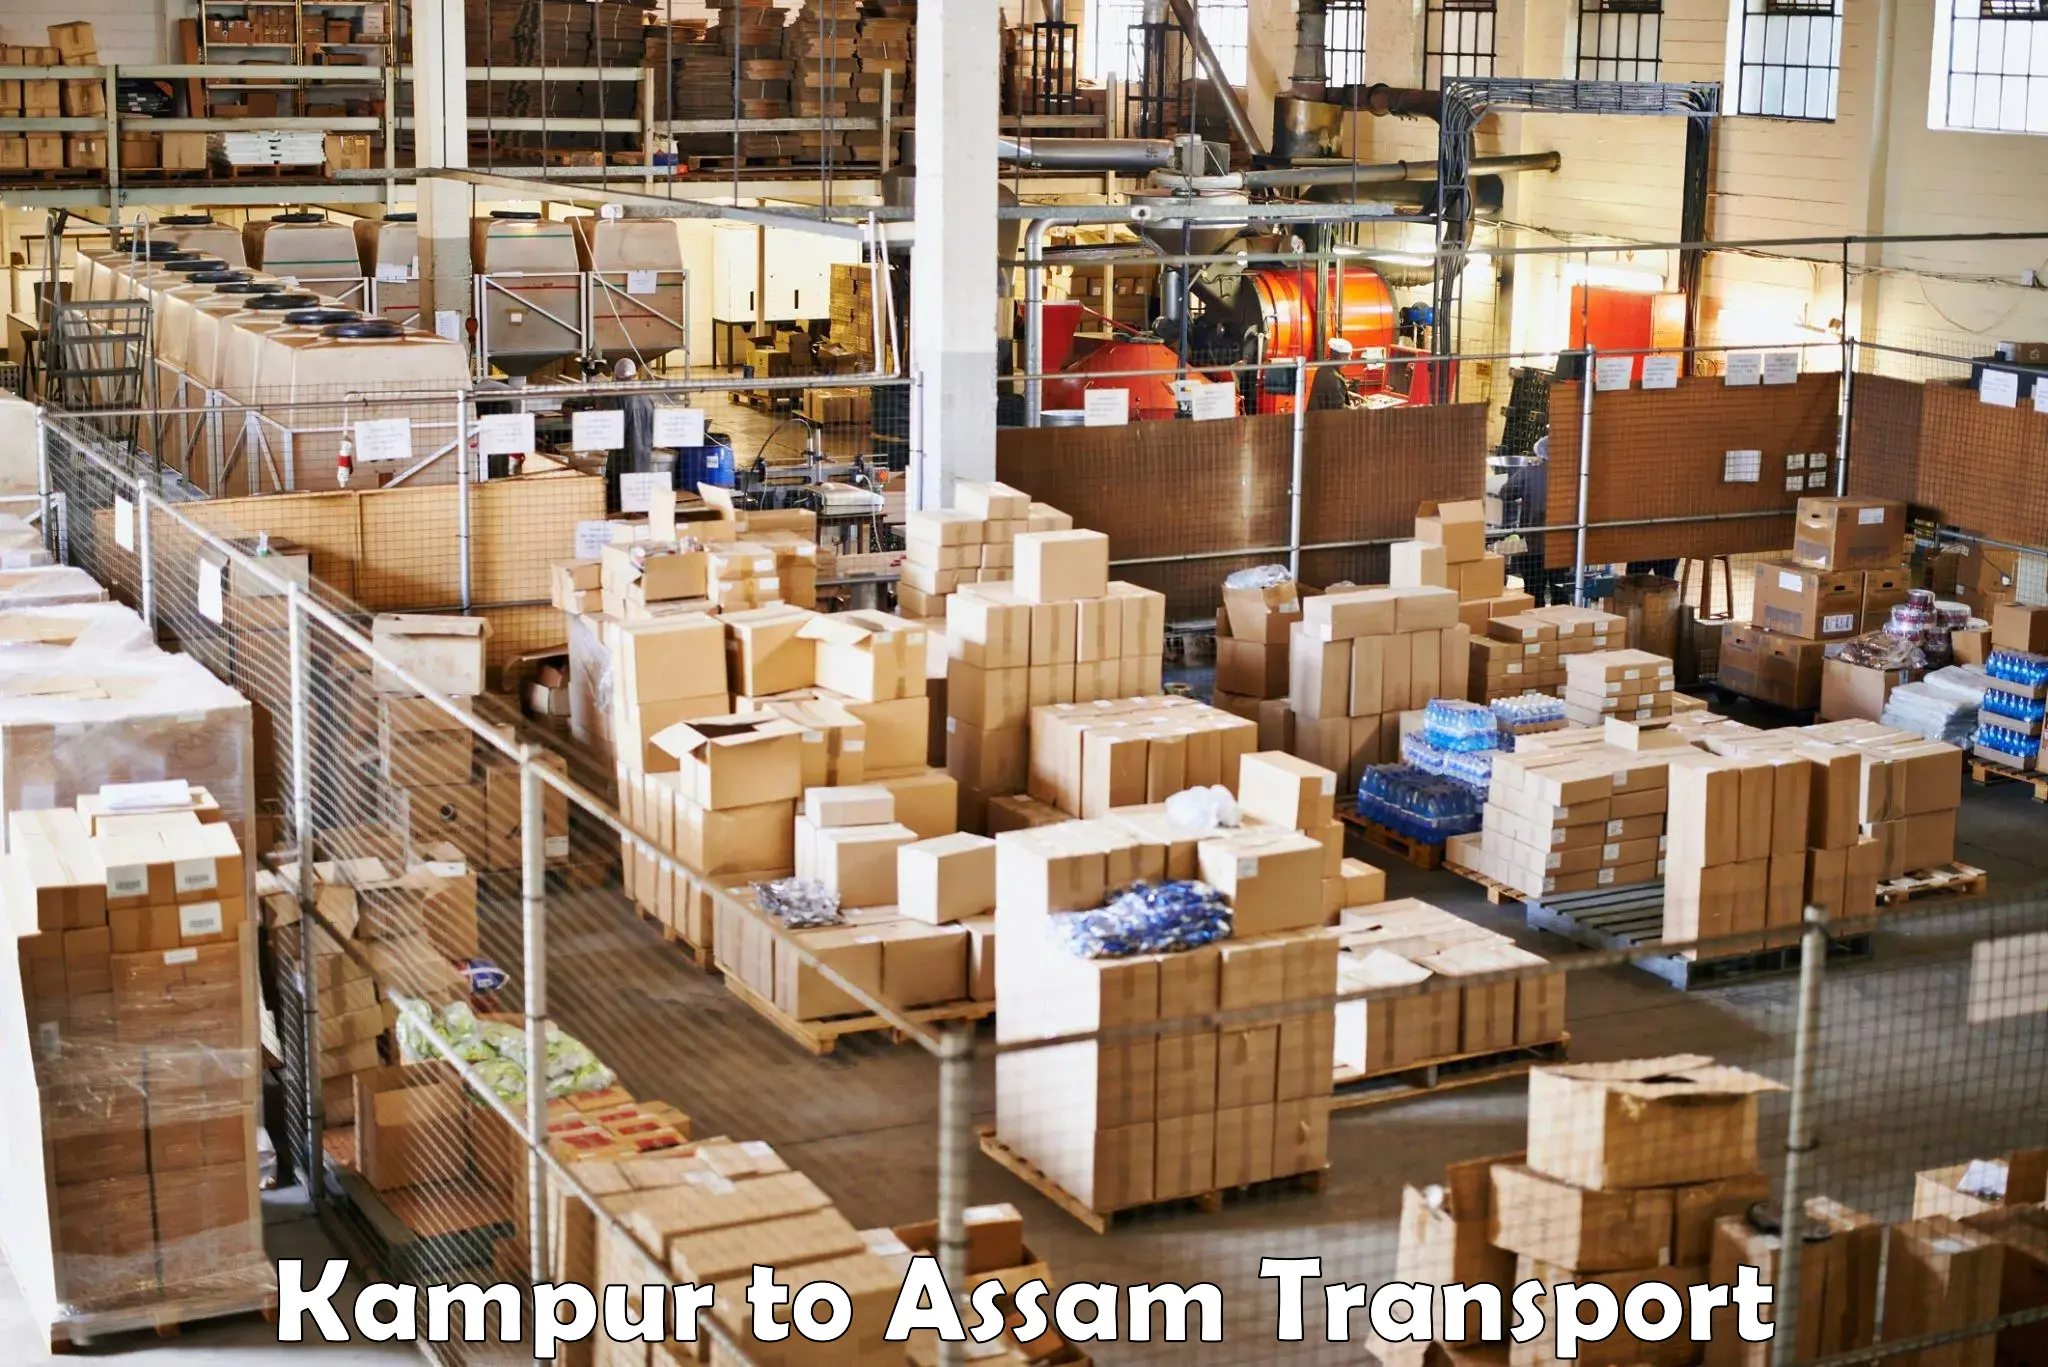 Furniture transport service Kampur to Kampur